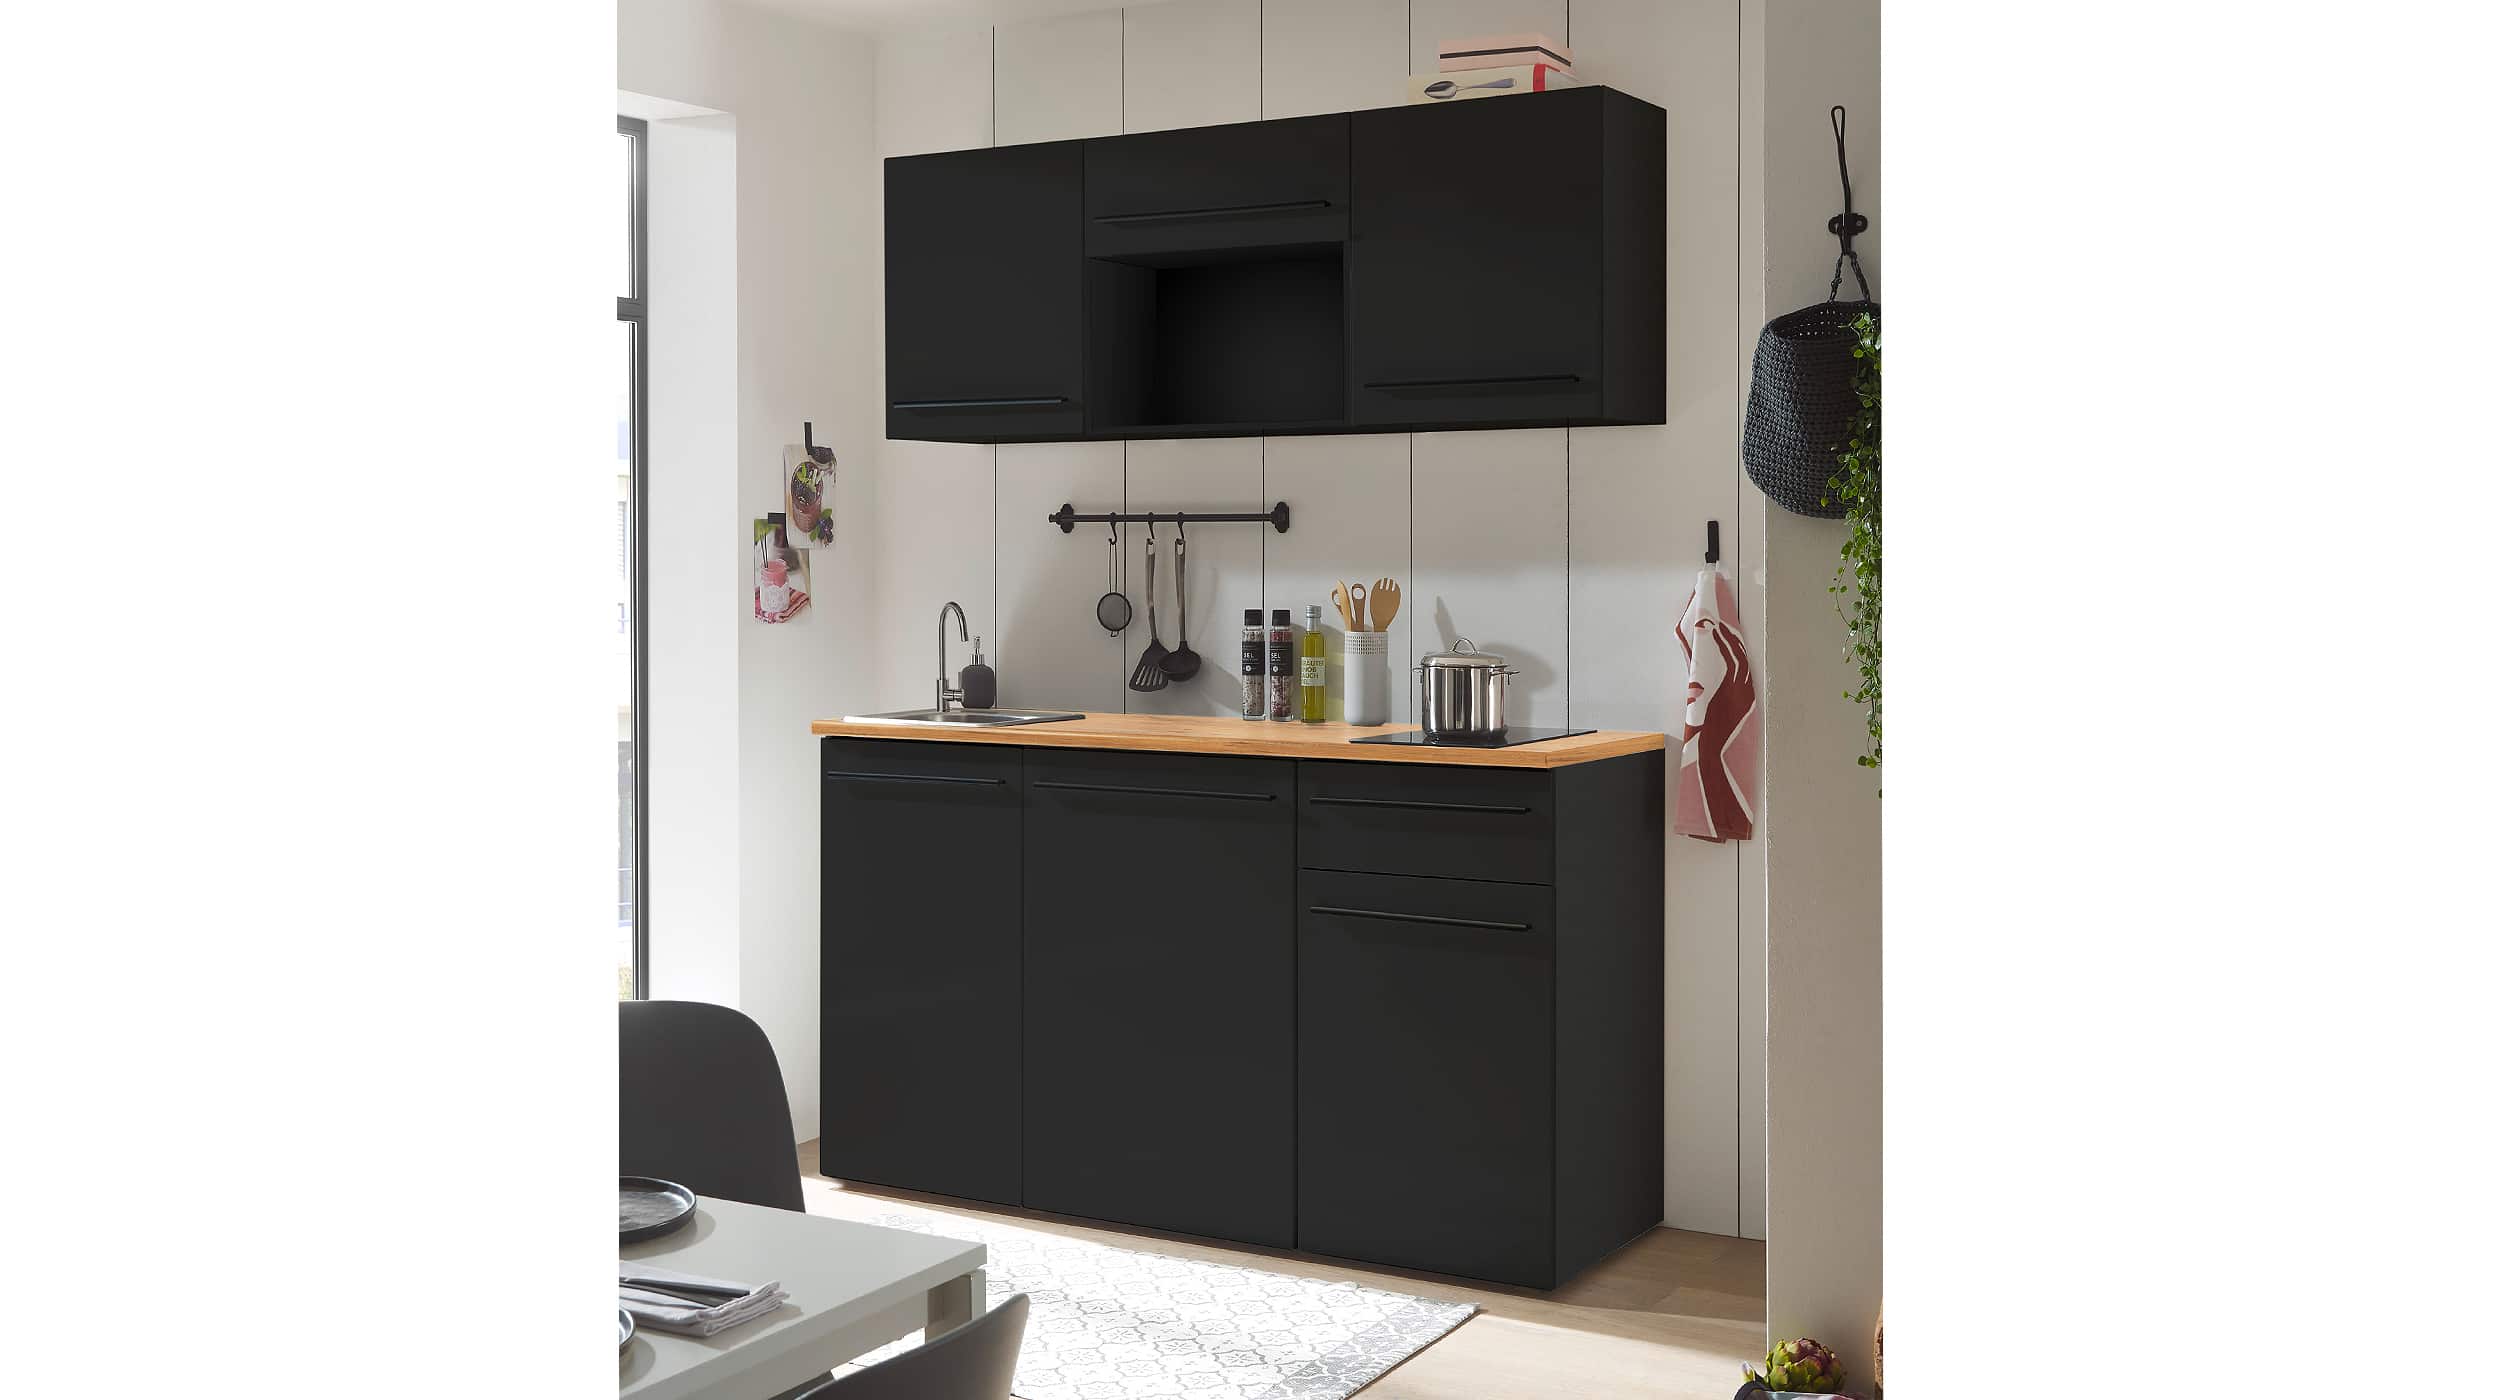 Pantry Küche - Miniküche - 160 cm - schwarz matt - JAZZ